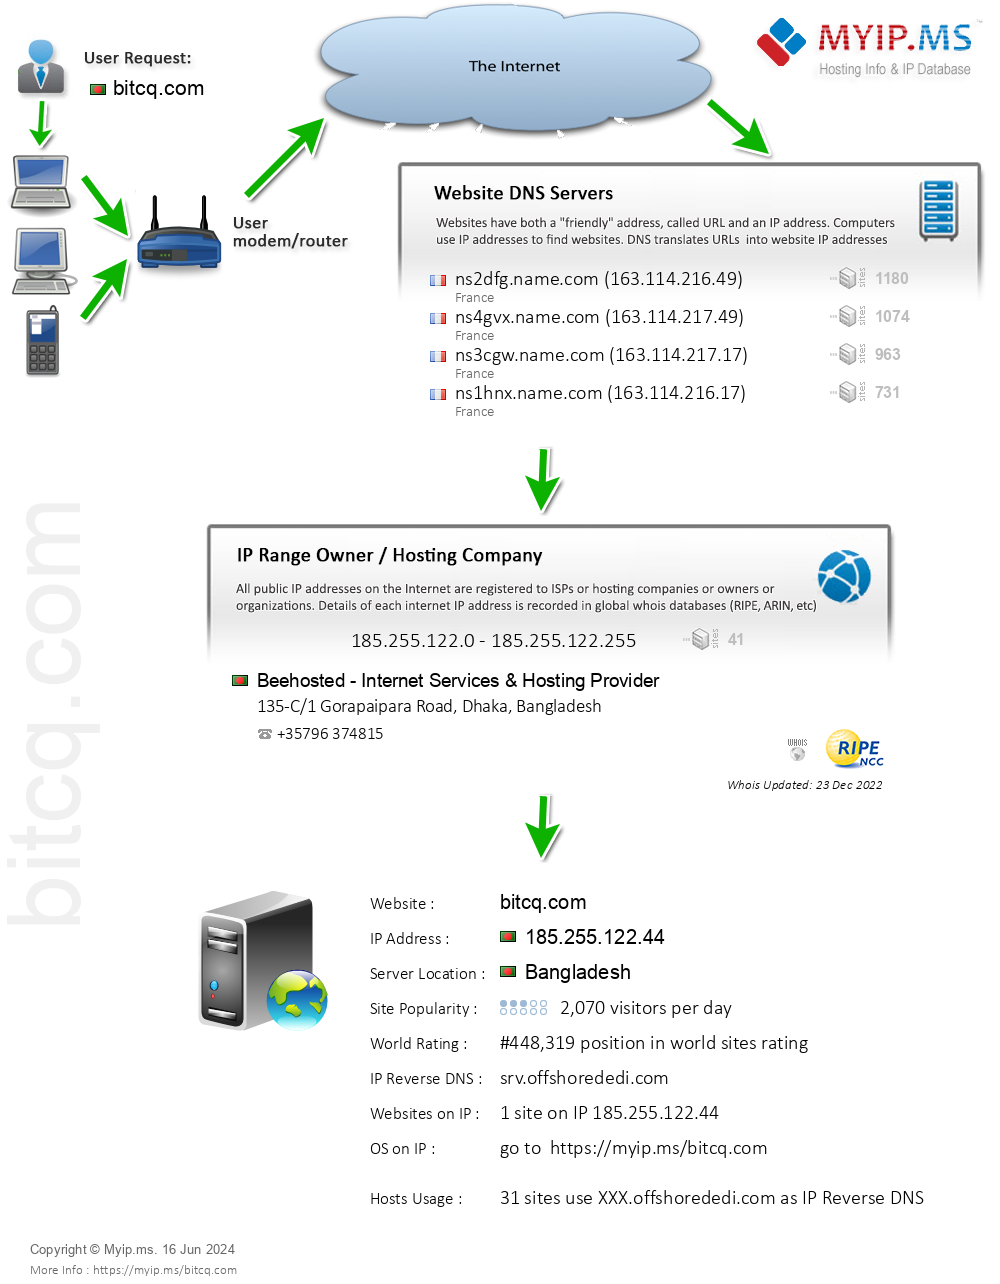 Bitcq.com - Website Hosting Visual IP Diagram